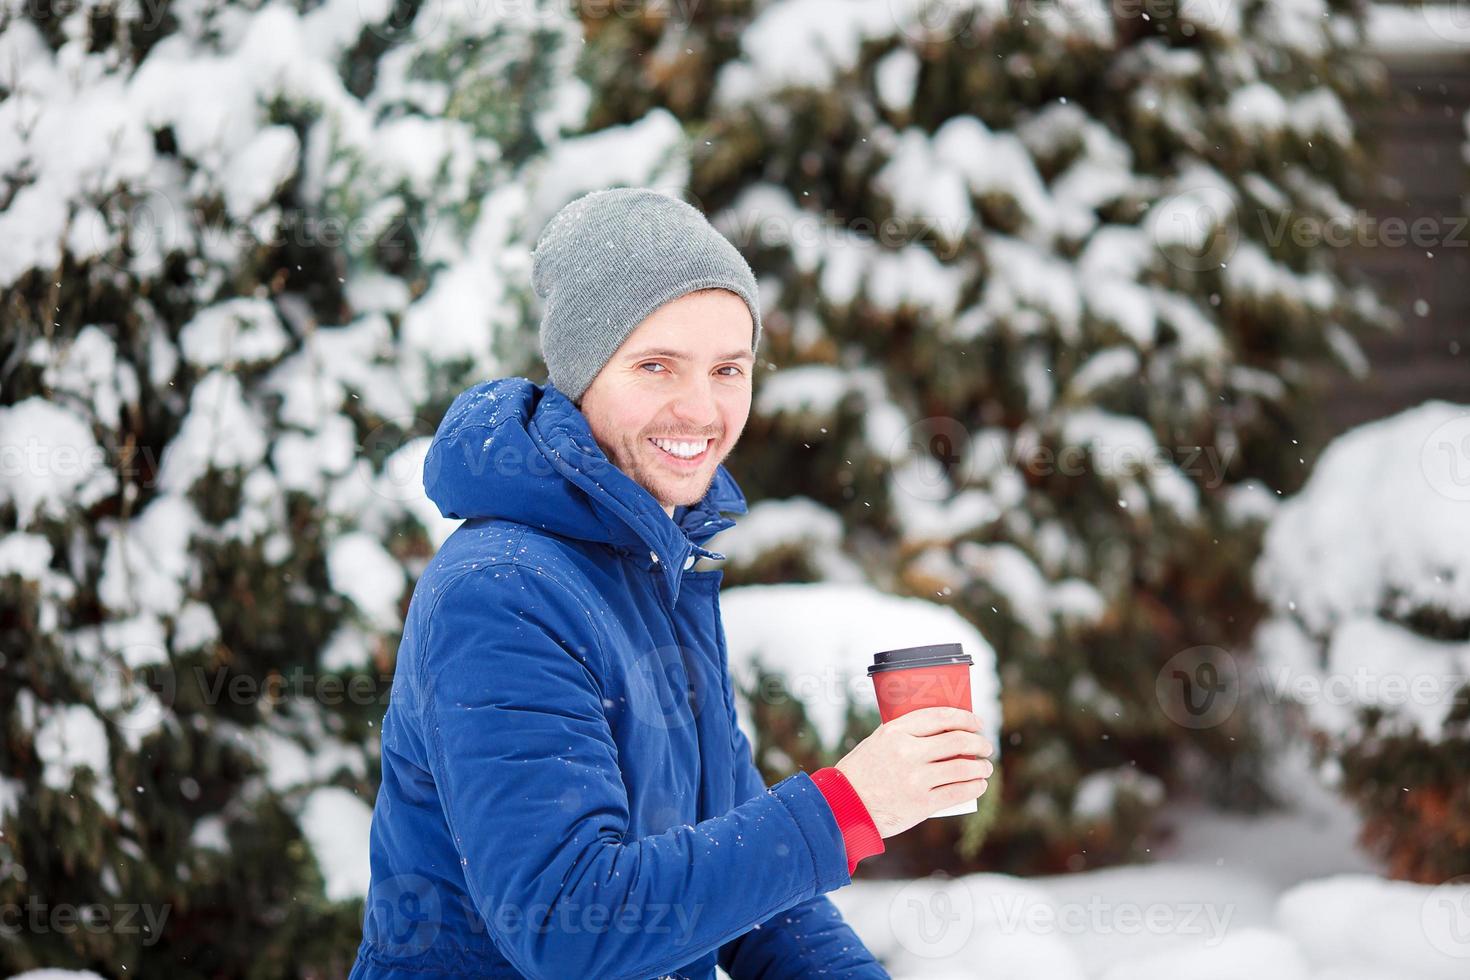 joven caucásico bebiendo café en un día de invierno congelado al aire libre foto